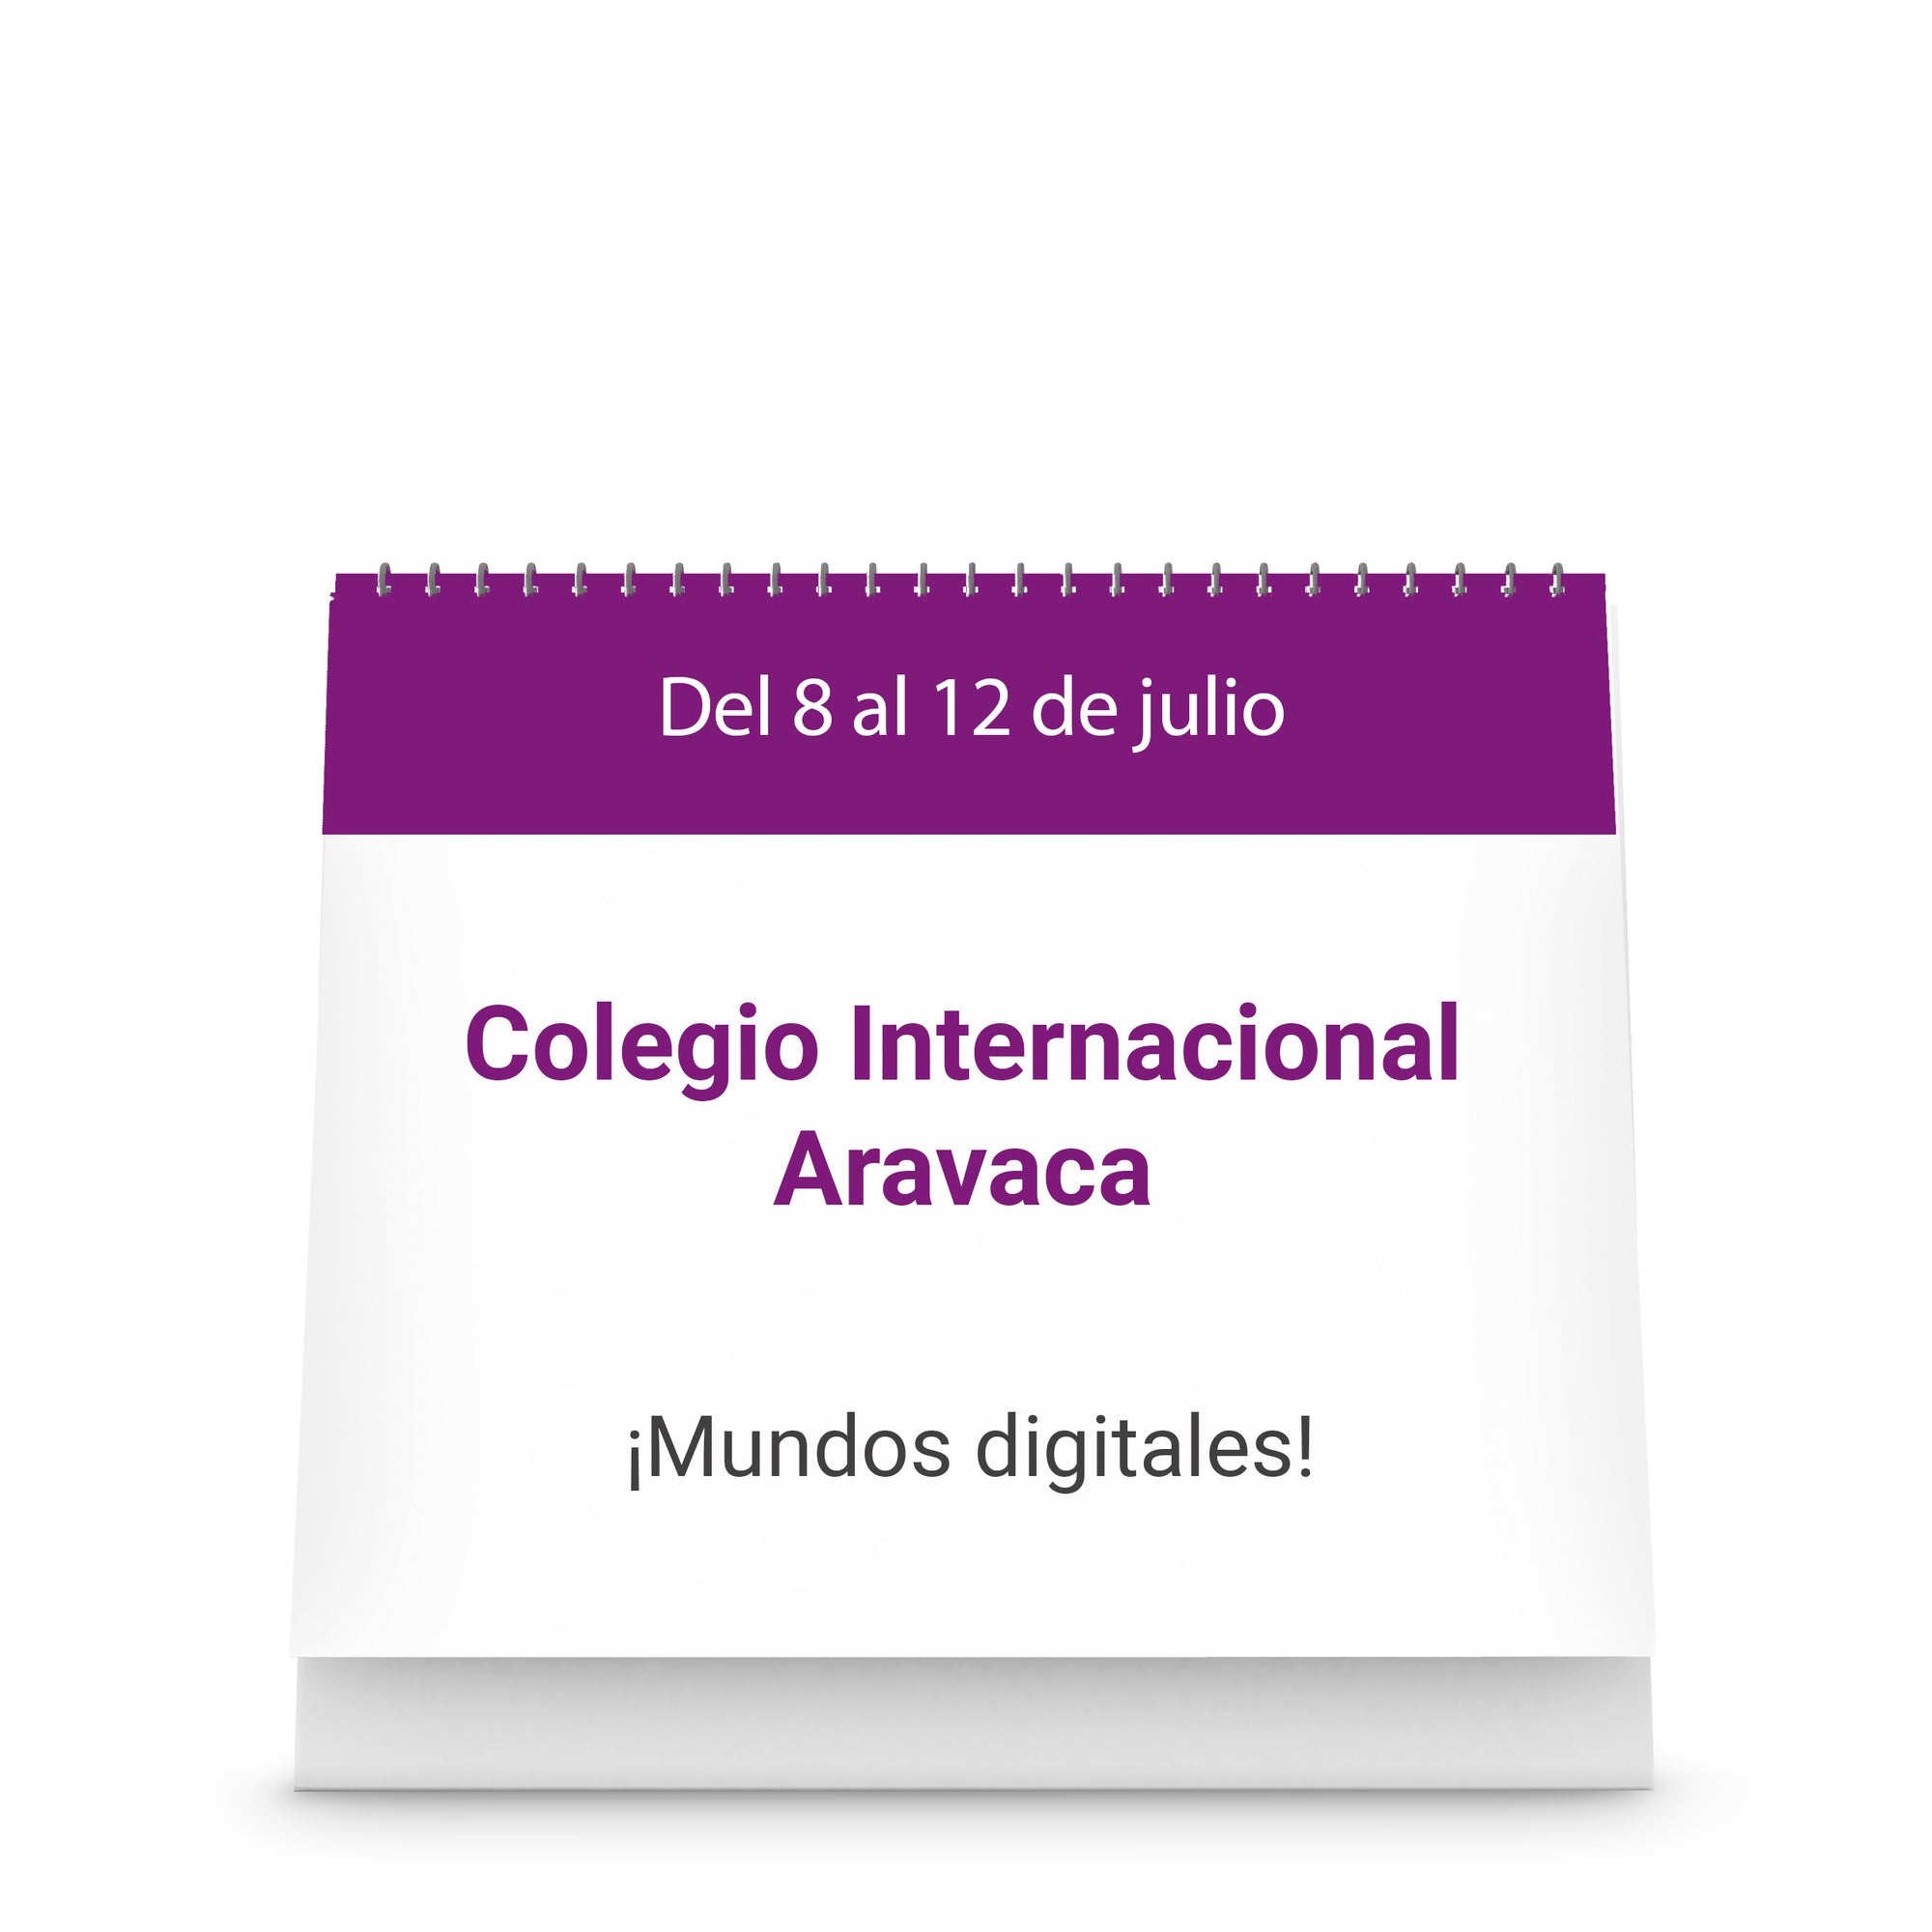 Colegio Internacional Aravaca - ¡Mundos digitales!